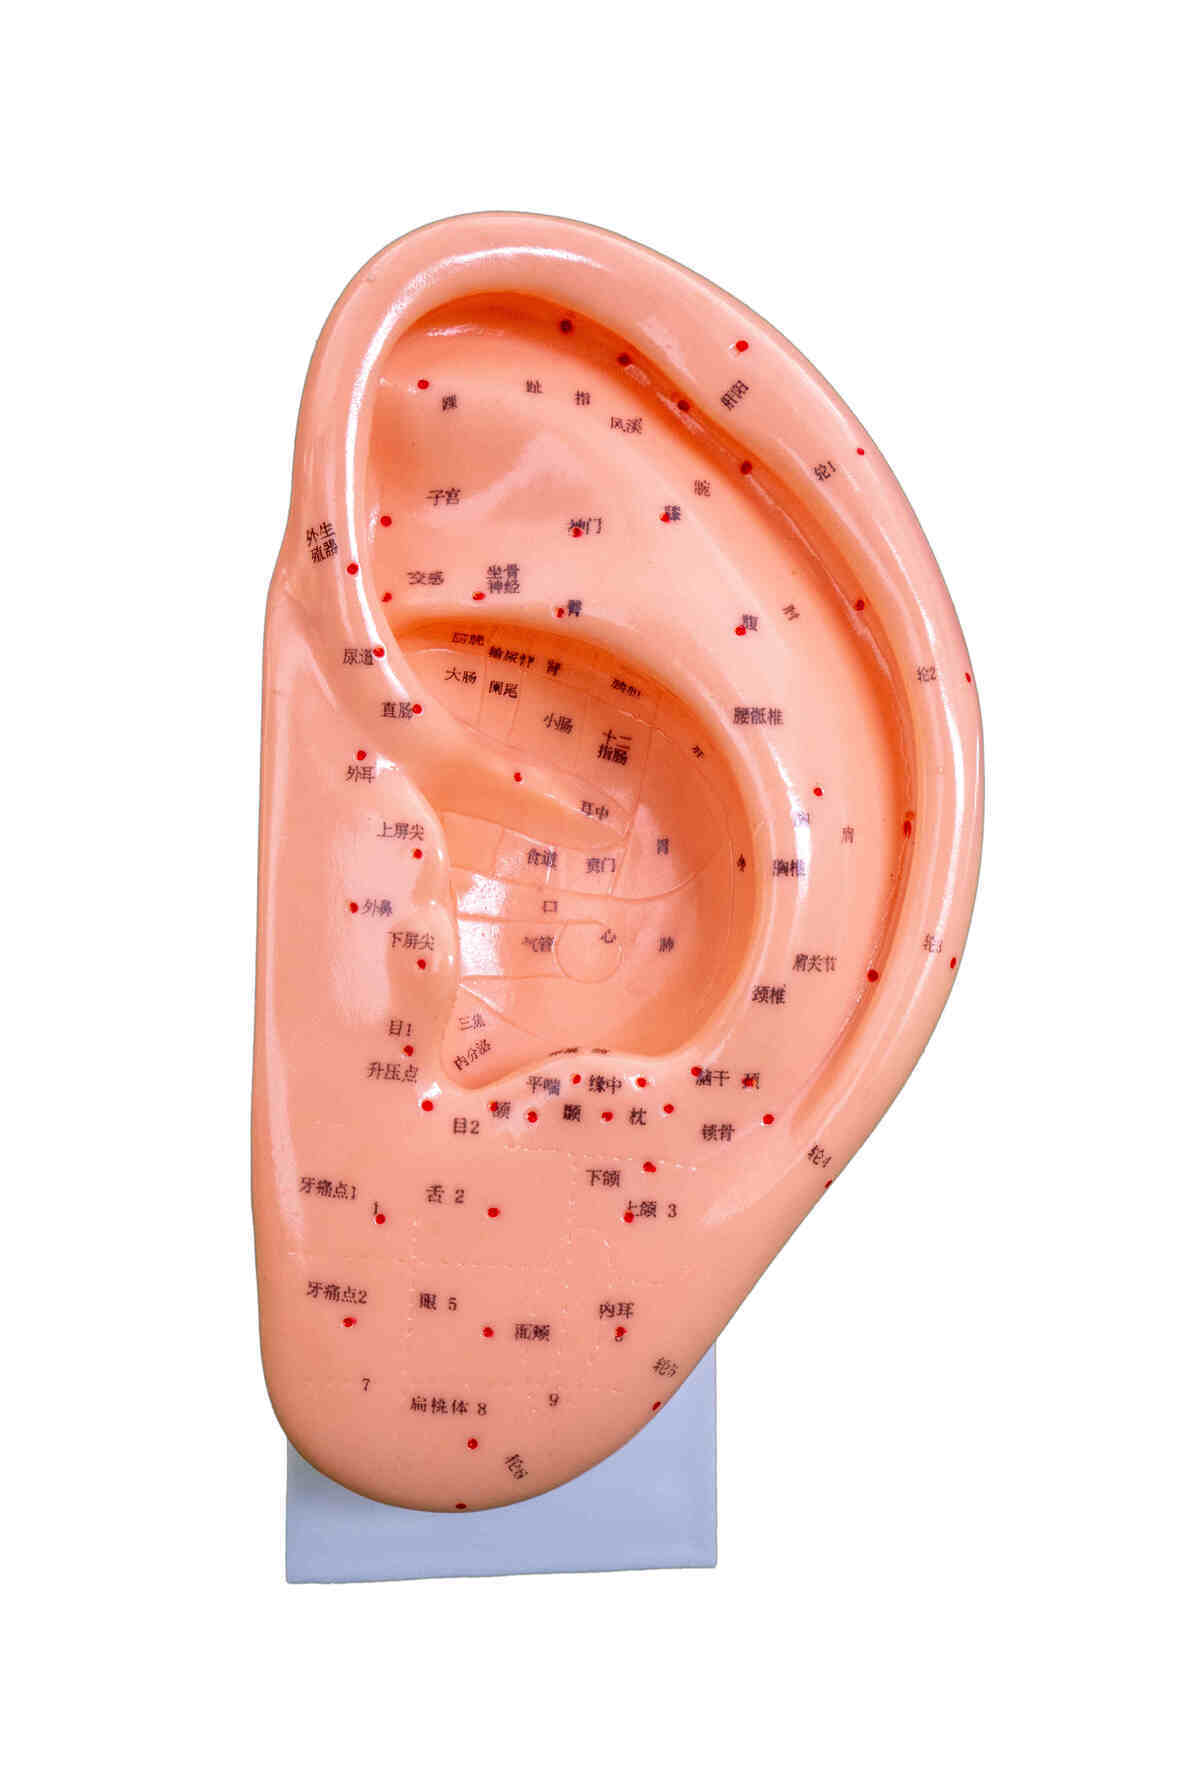 YA/Z022 Acupuncture Human Ear, 22 cm